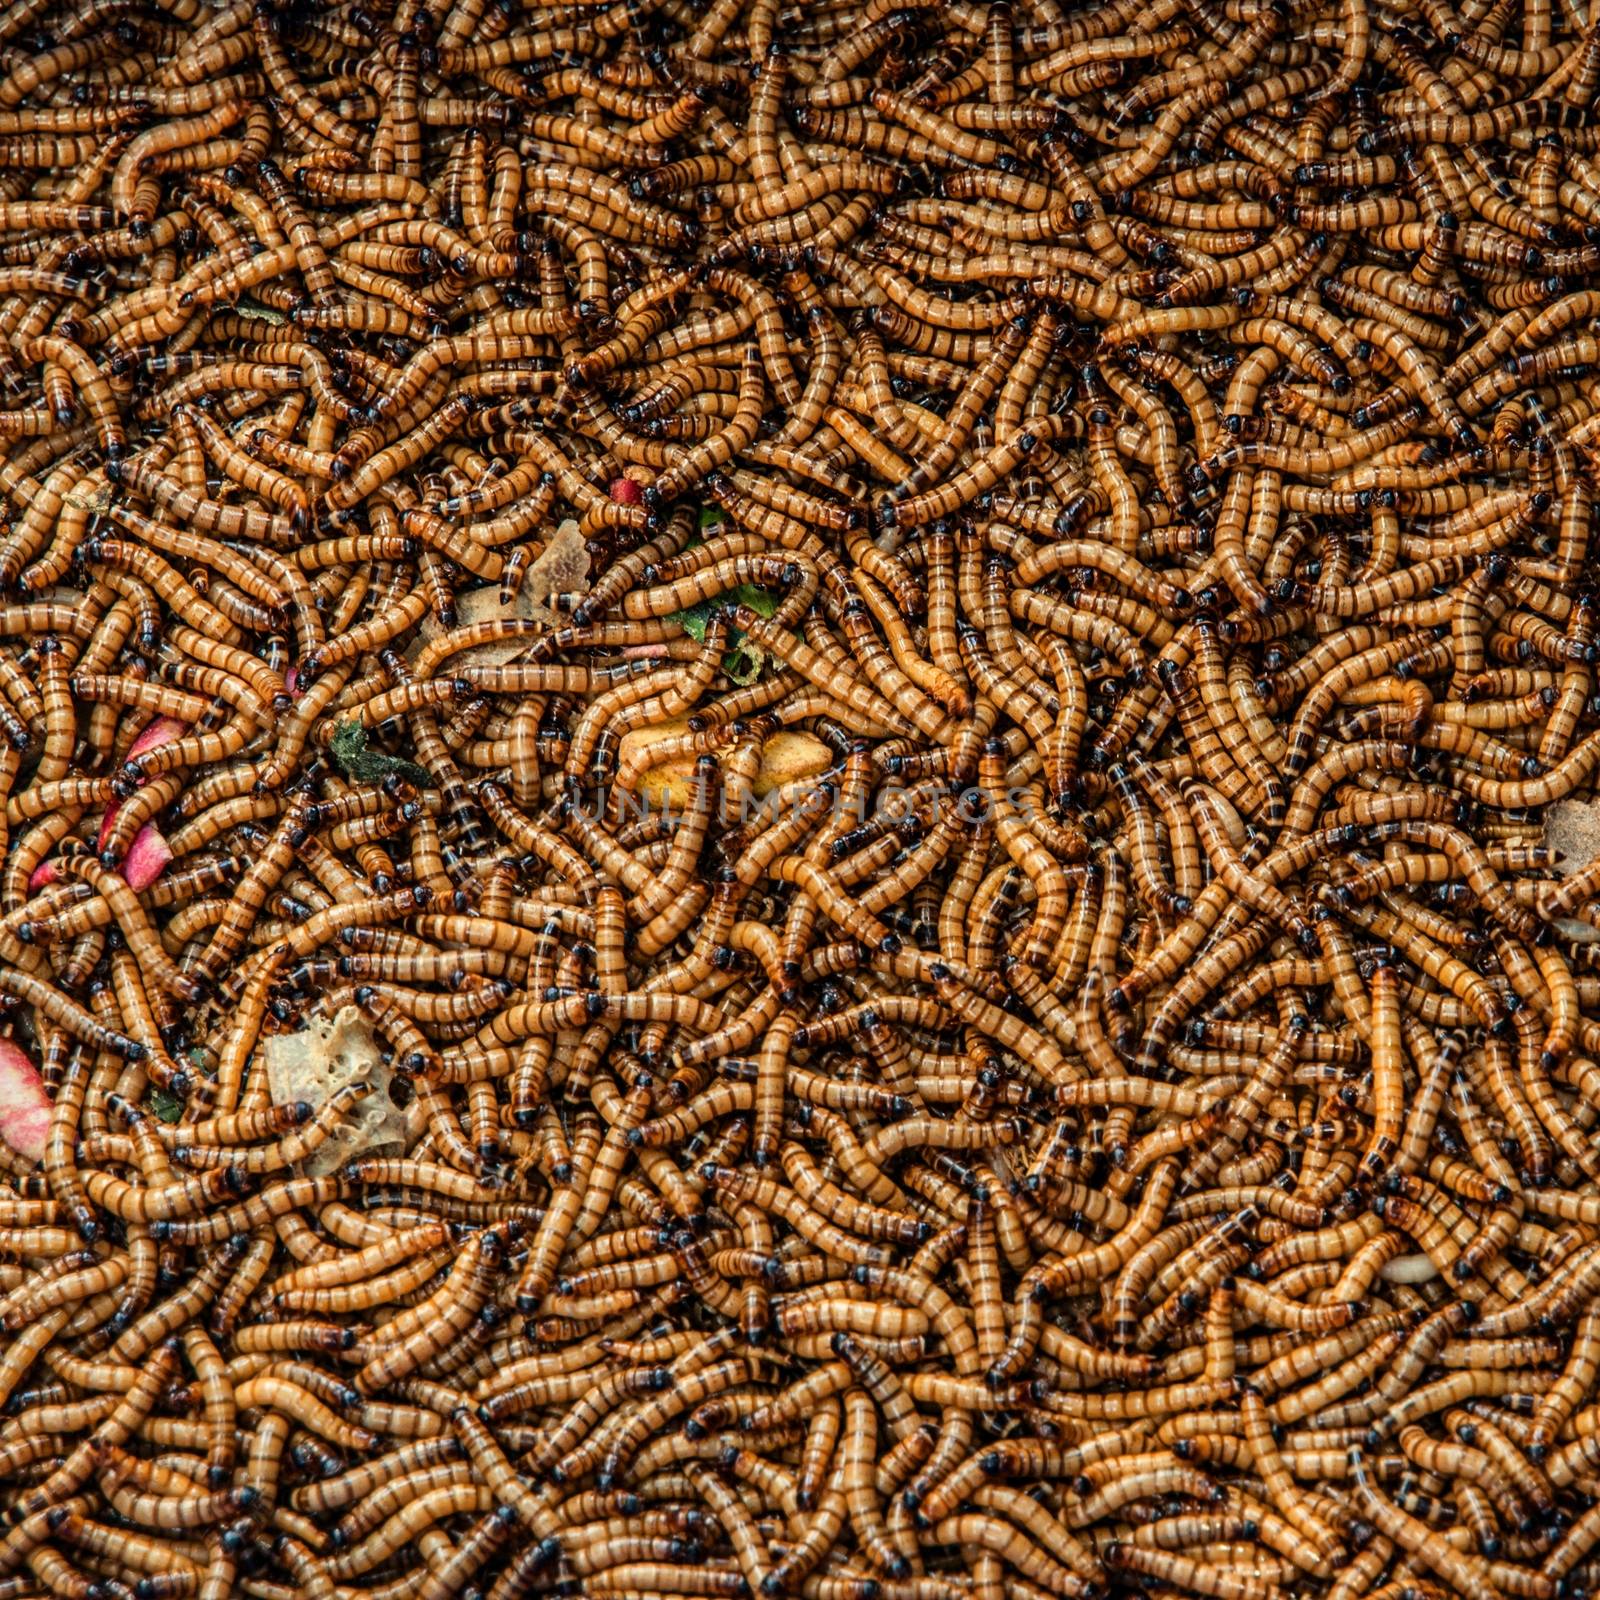 Worms in animal market (Kunming, Yunnan, China)